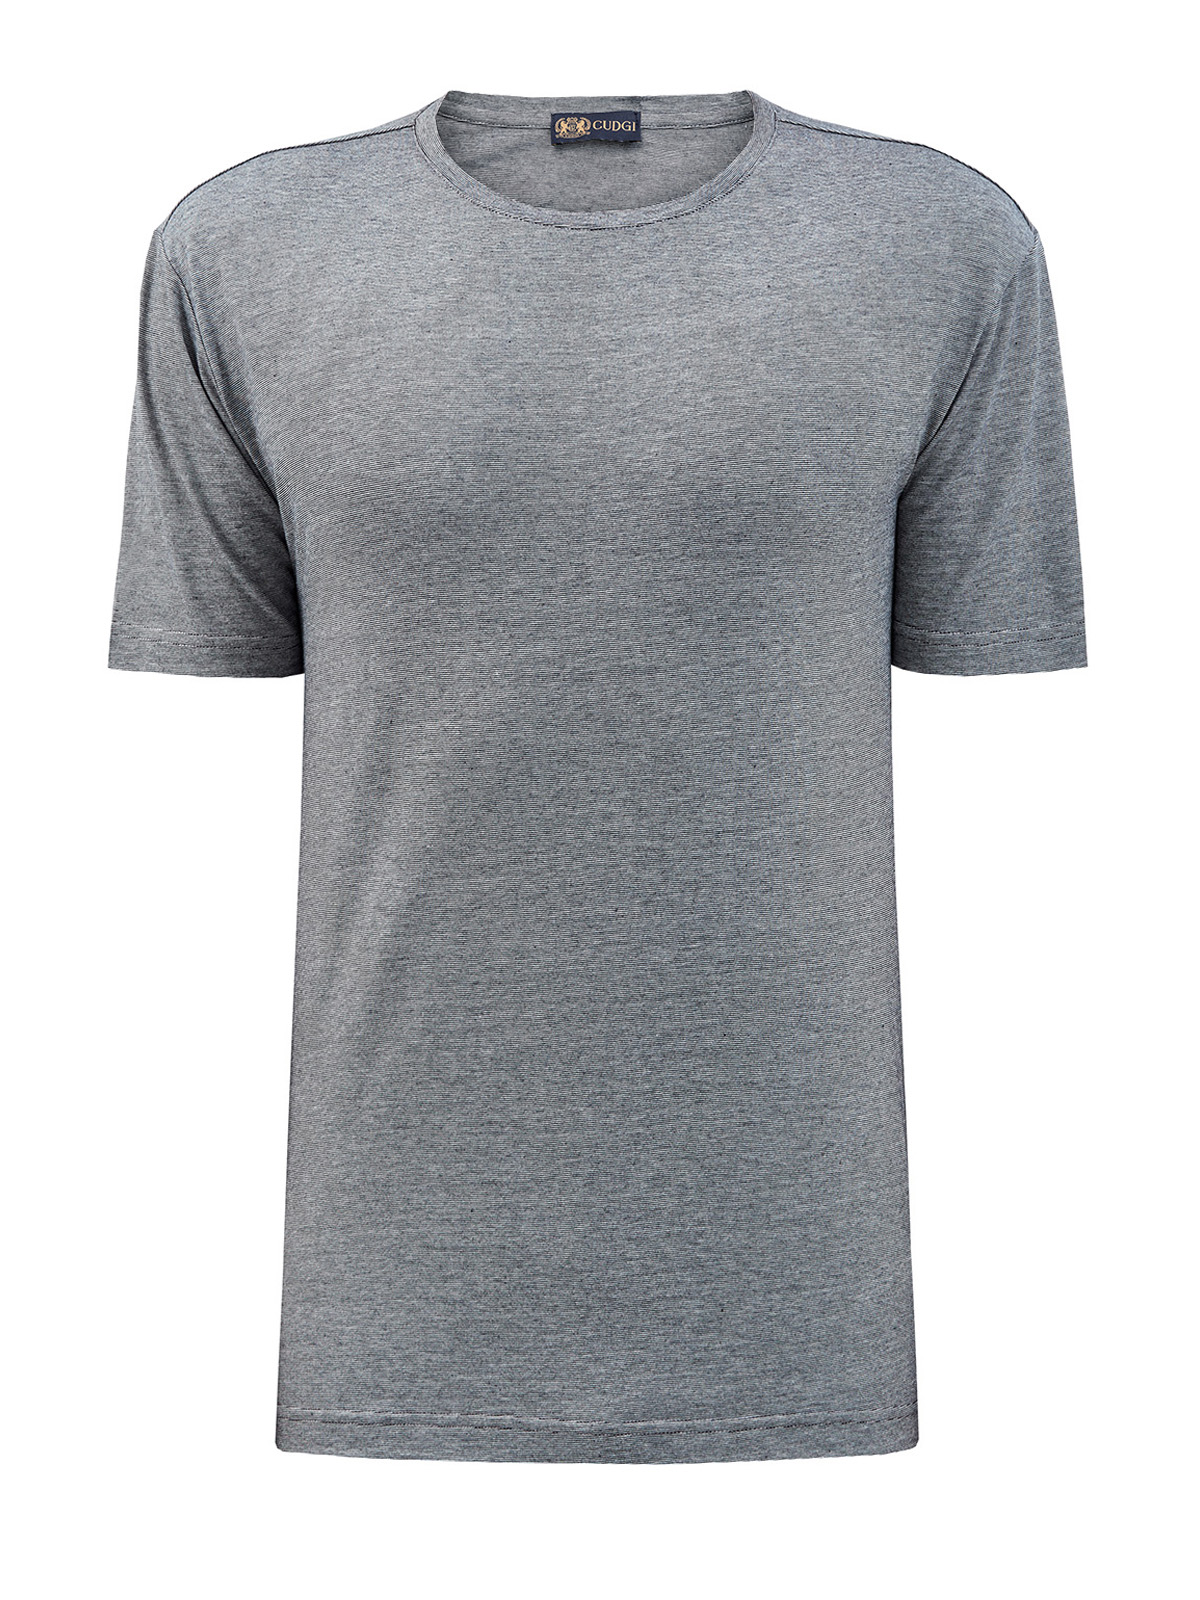 Хлопковая футболка с переплетением серых и белых волокон CUDGI, цвет серый, размер L;XL;2XL;4XL;5XL - фото 1